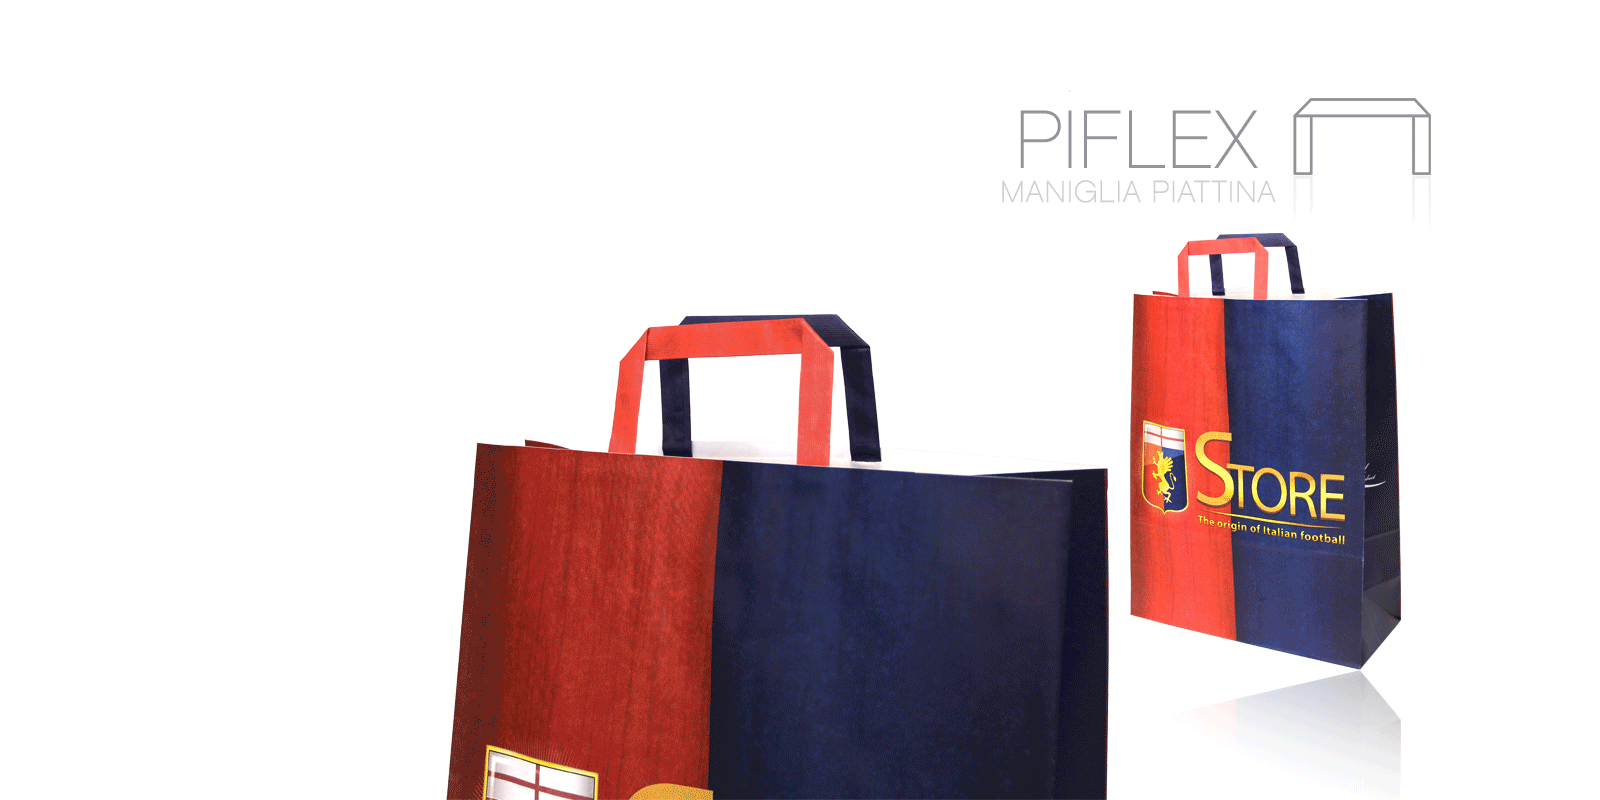 Flat Handles Papier Carrier Bags called Piflex